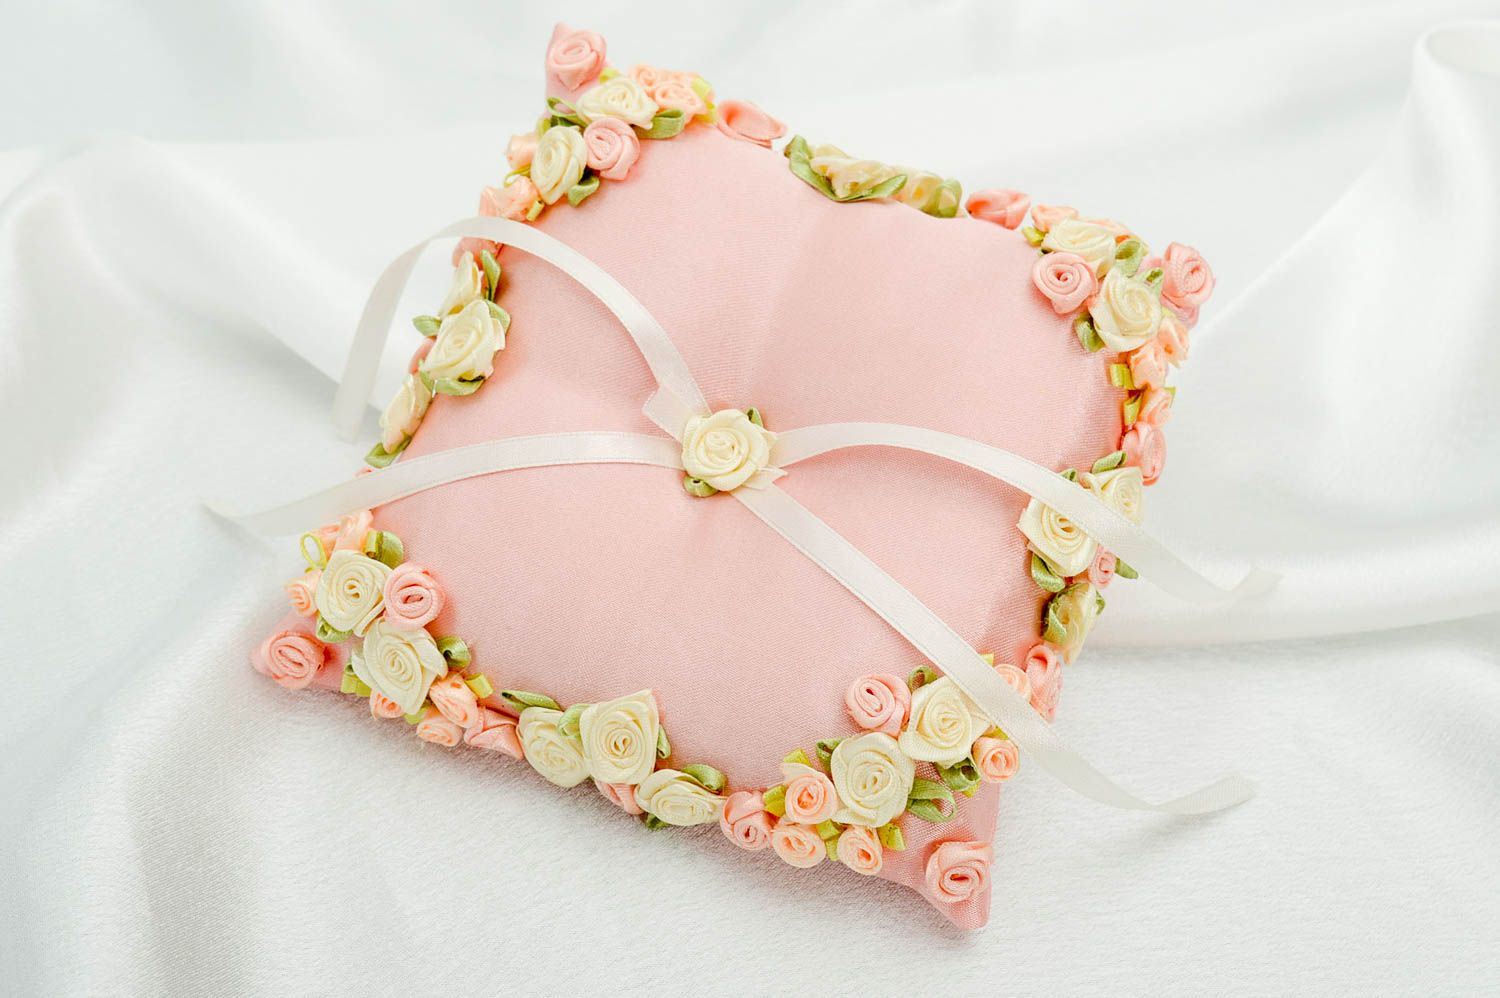 Свадебный аксессуар хэнд мэйд розовая подушечка для колец атрибут для свадьбы фото 1